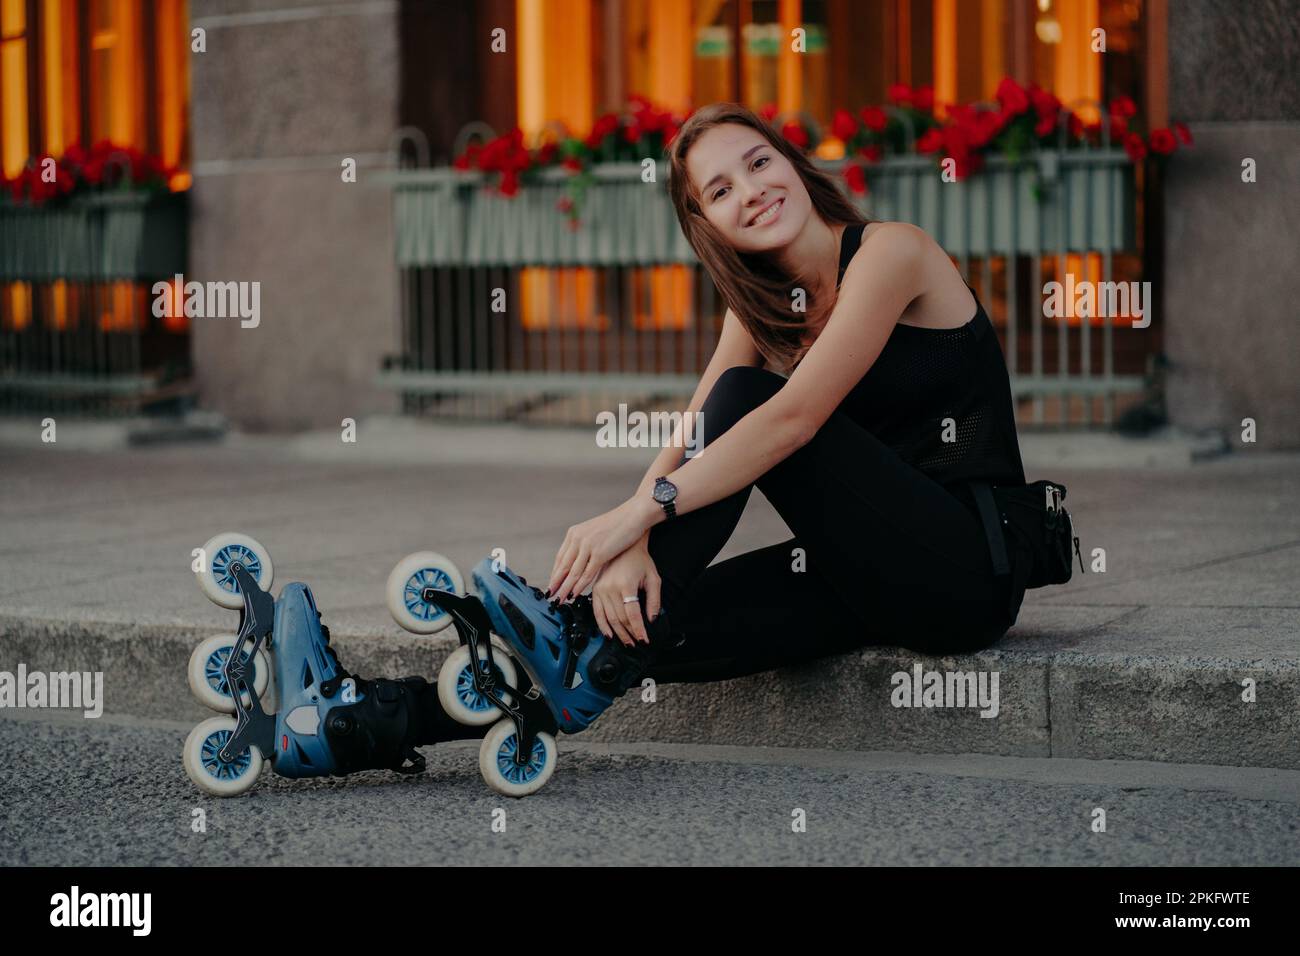 Eine attraktive junge europäische Frau trägt Rollerskates und macht nach dem Fahren eine Pause. Sie trägt schwarze Aktivbekleidung und hat ein fröhliches Lächeln im Gesicht. P Stockfoto